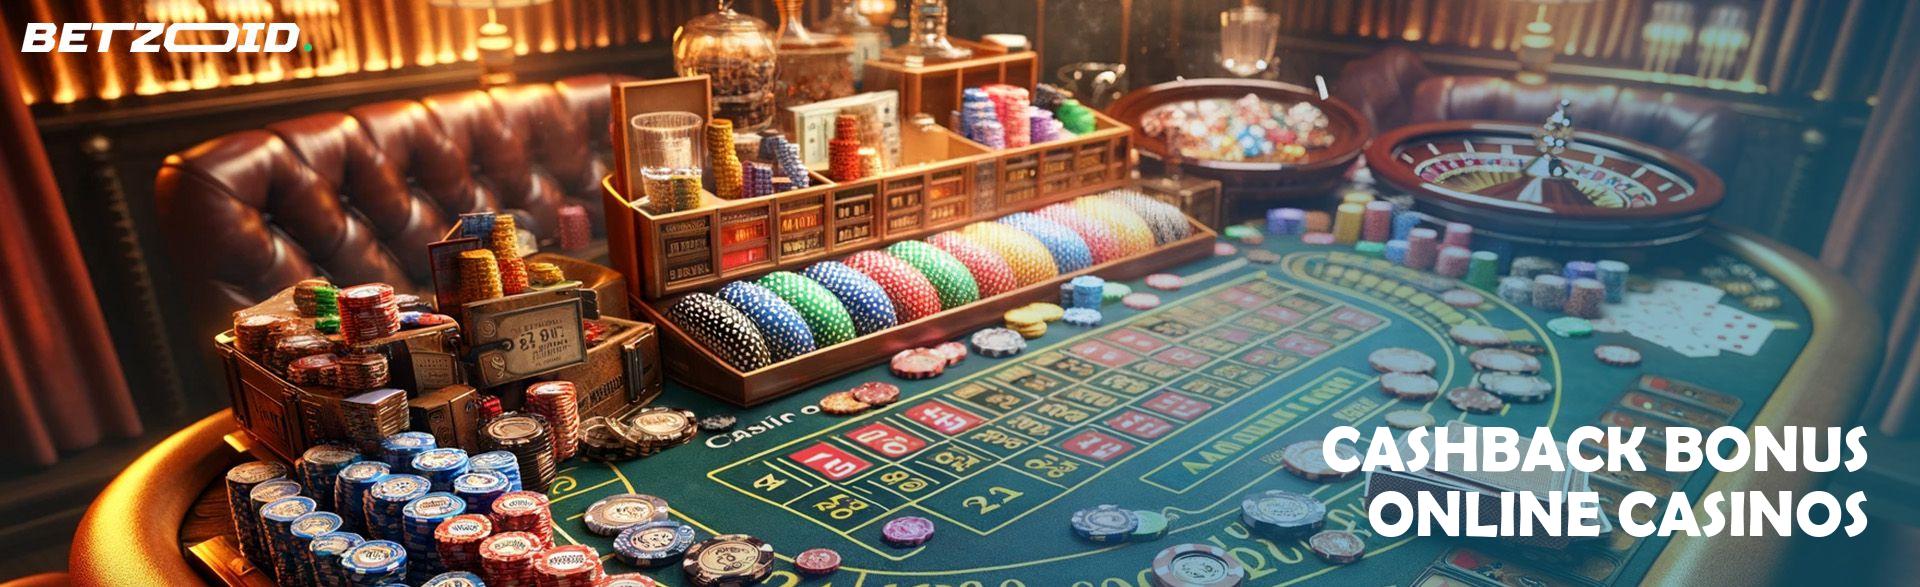 Cashback por jugar en casinos de tu ciudad